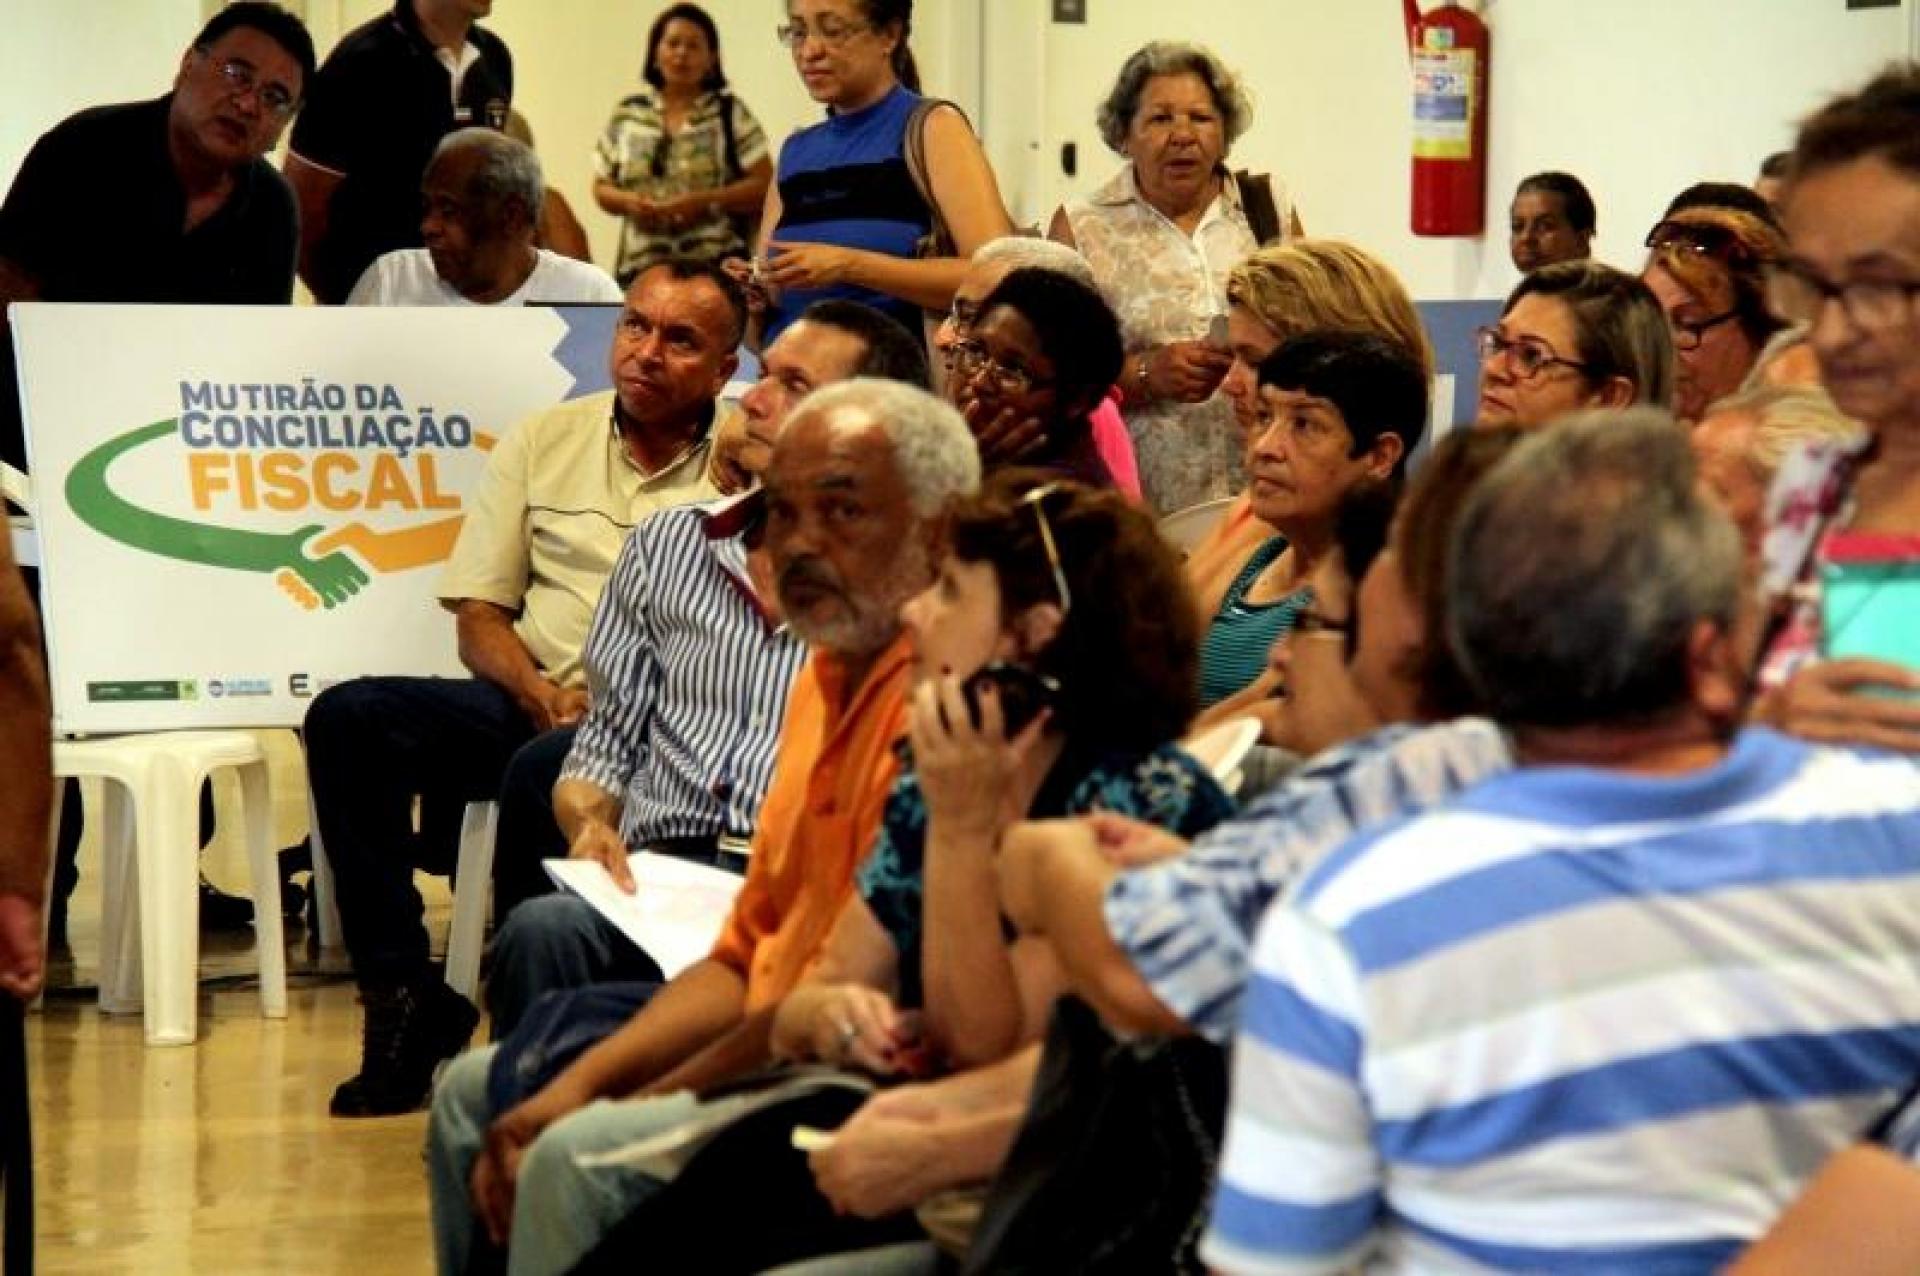 CONCILIAÇÃO Cuiabá realiza 400 acordos no 1º dia de mutirão